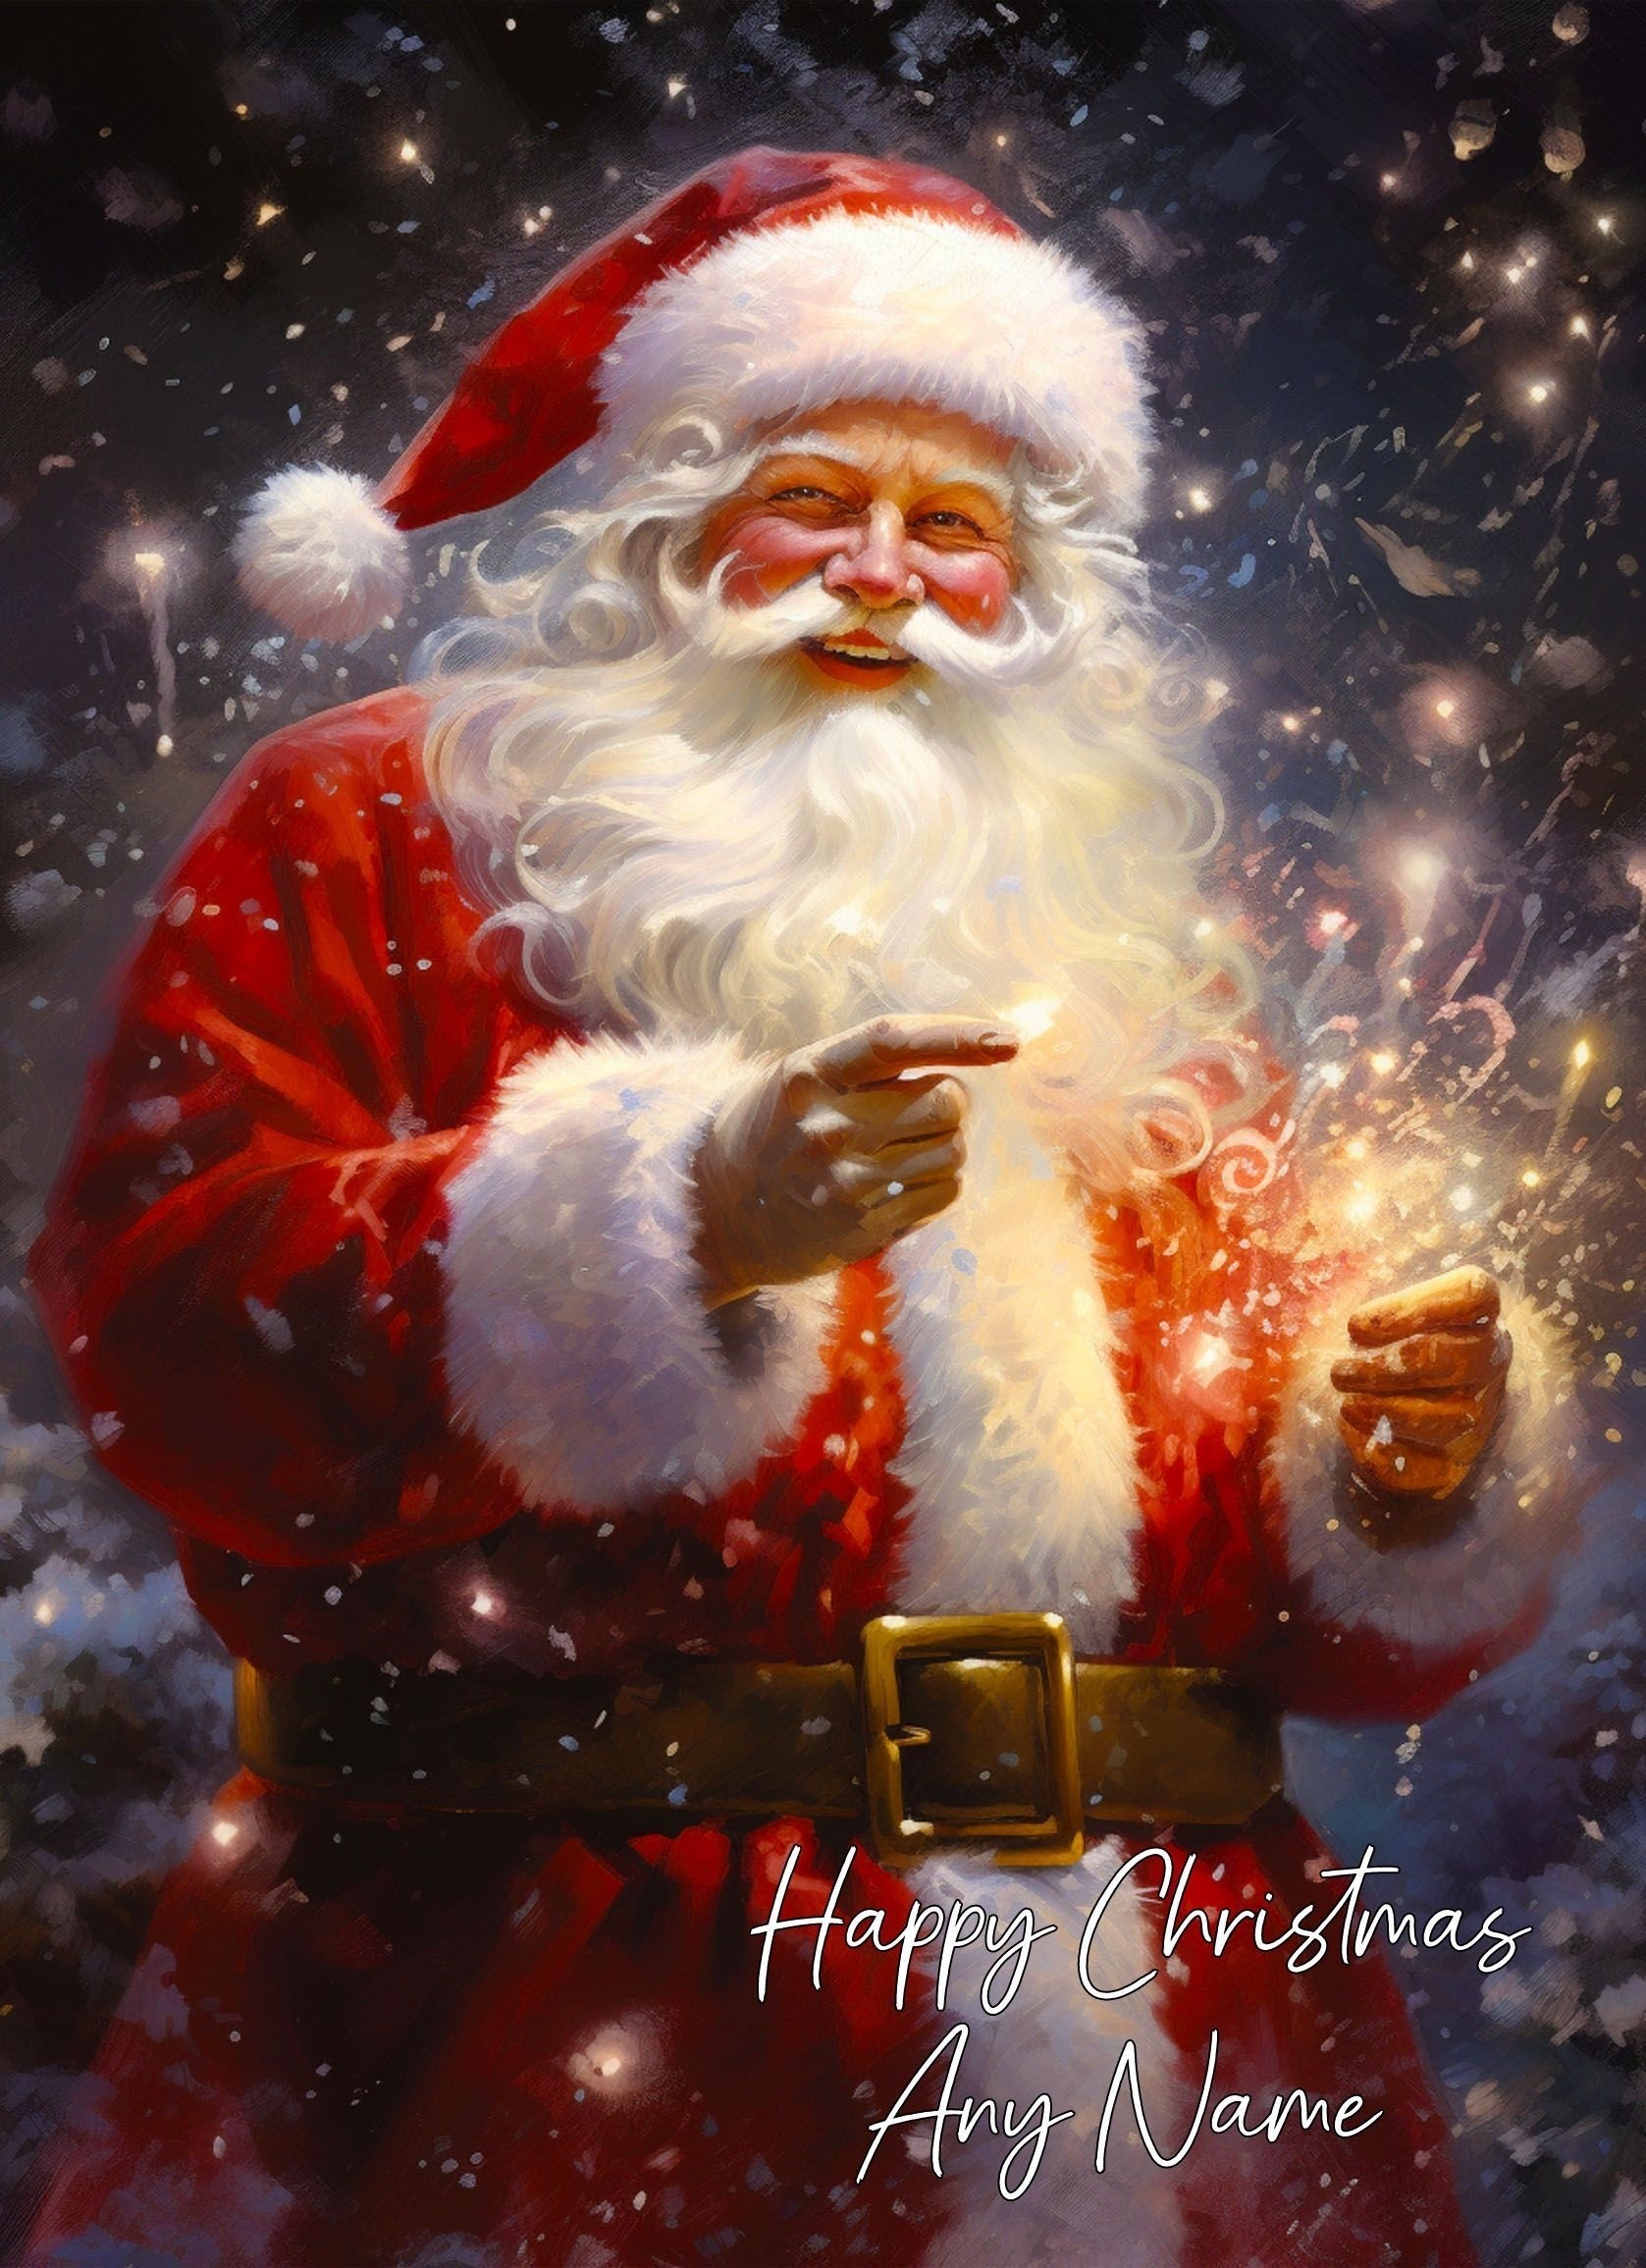 Personalised Santa Claus Art Christmas Card (Design 4)